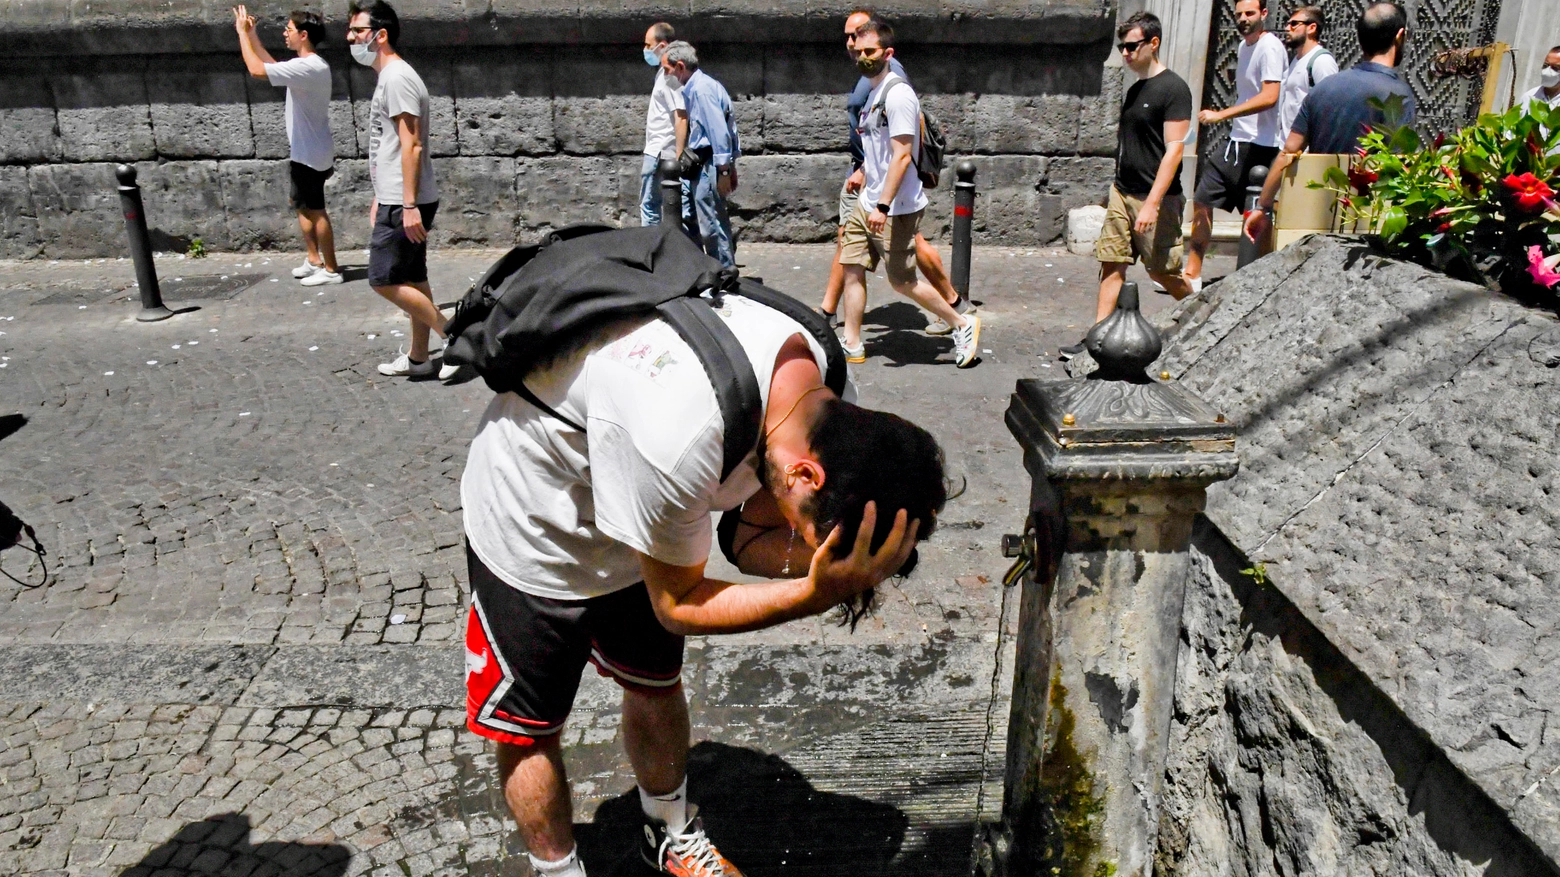 Una persona si bagna la testa per trovare sollievo dal caldo a Napoli (Ansa)